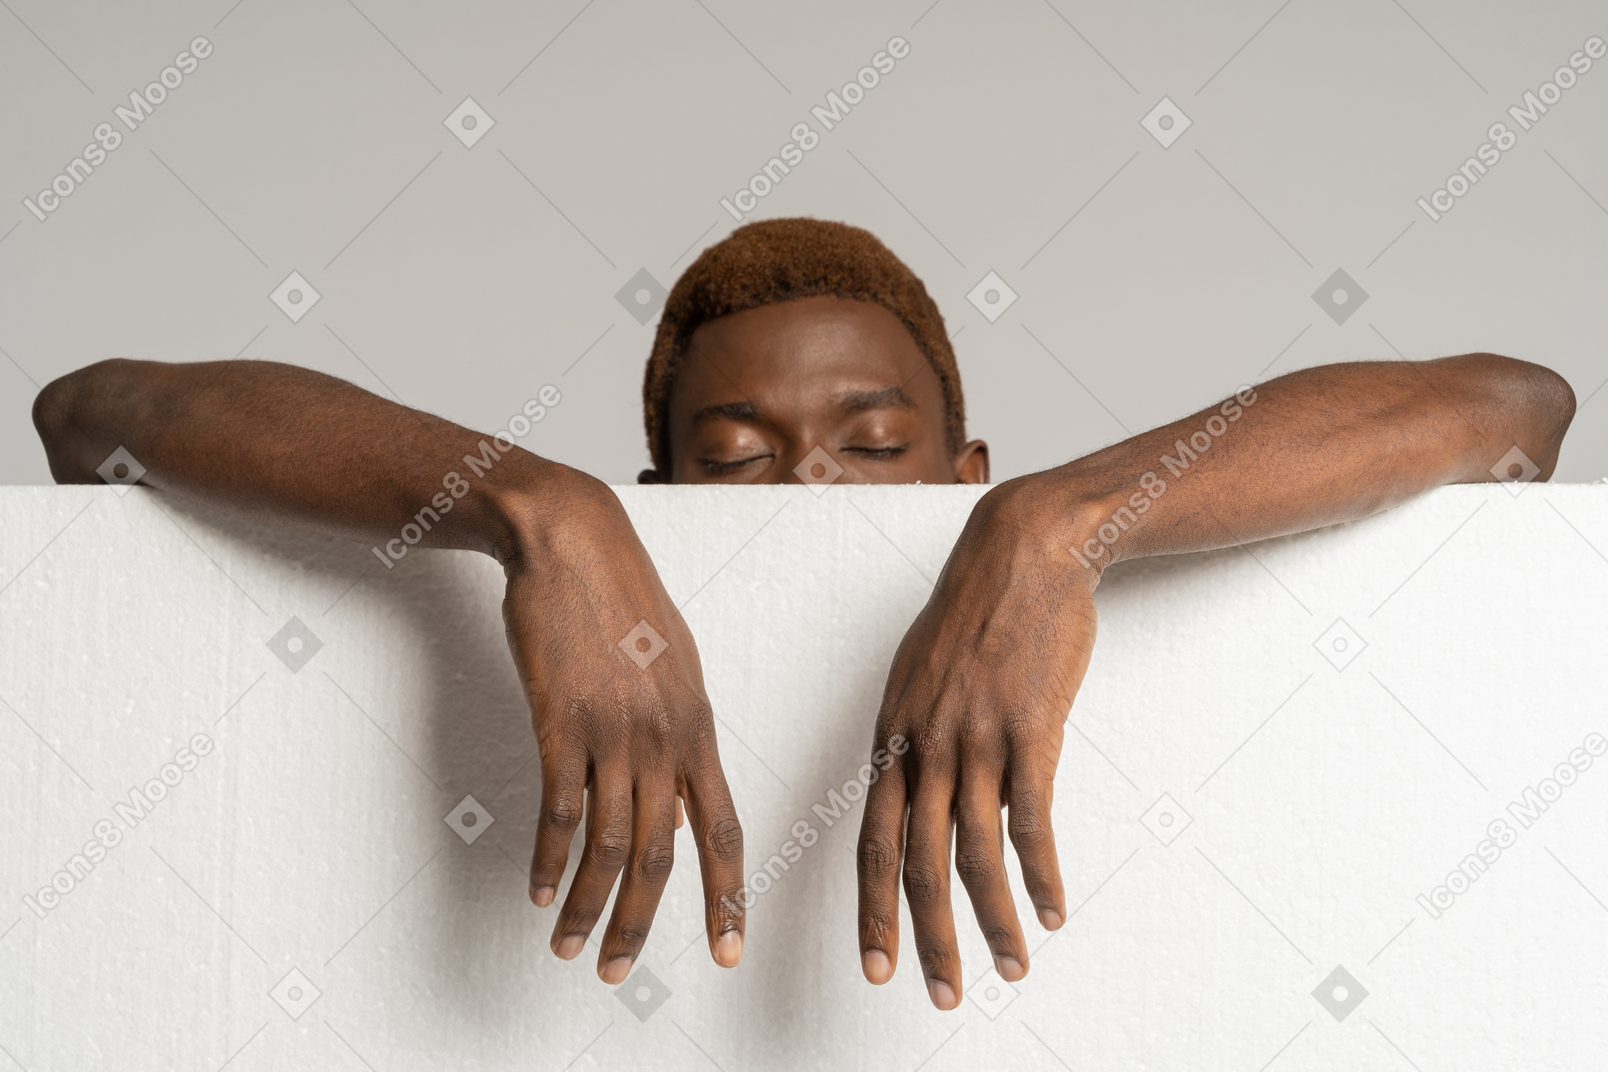 Vista frontal de un joven afro de pie detrás de espuma de poliestireno